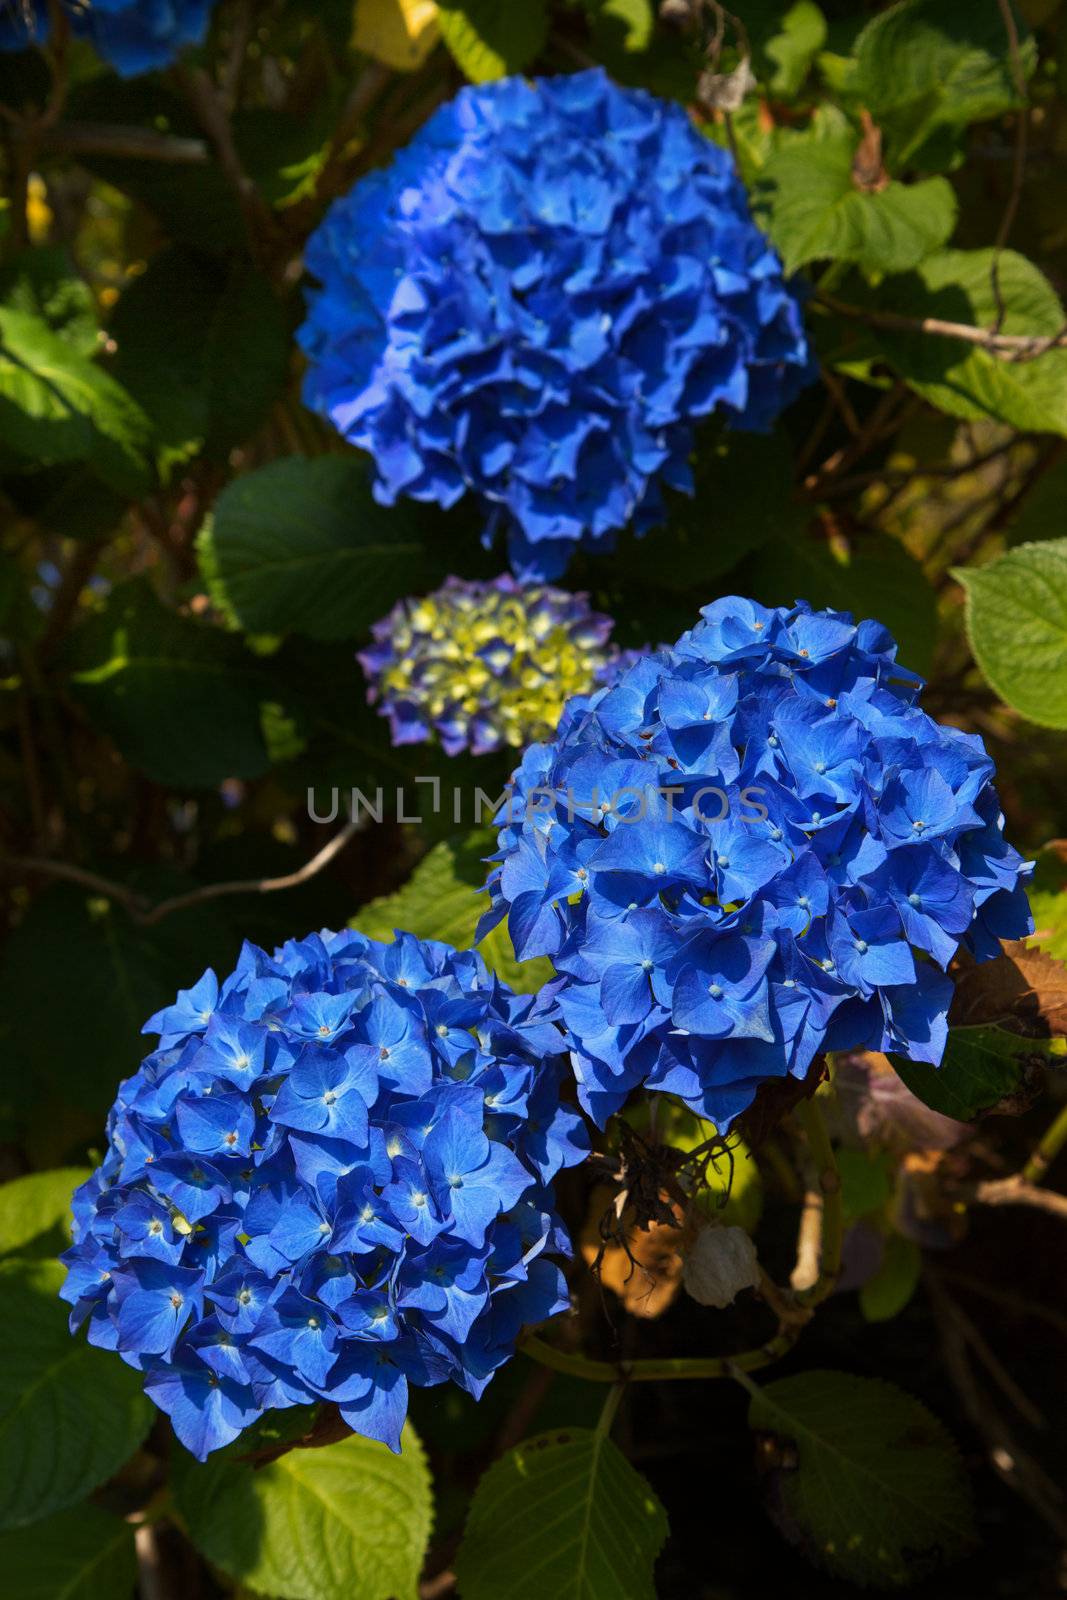 Blue Hydrangea by bobkeenan